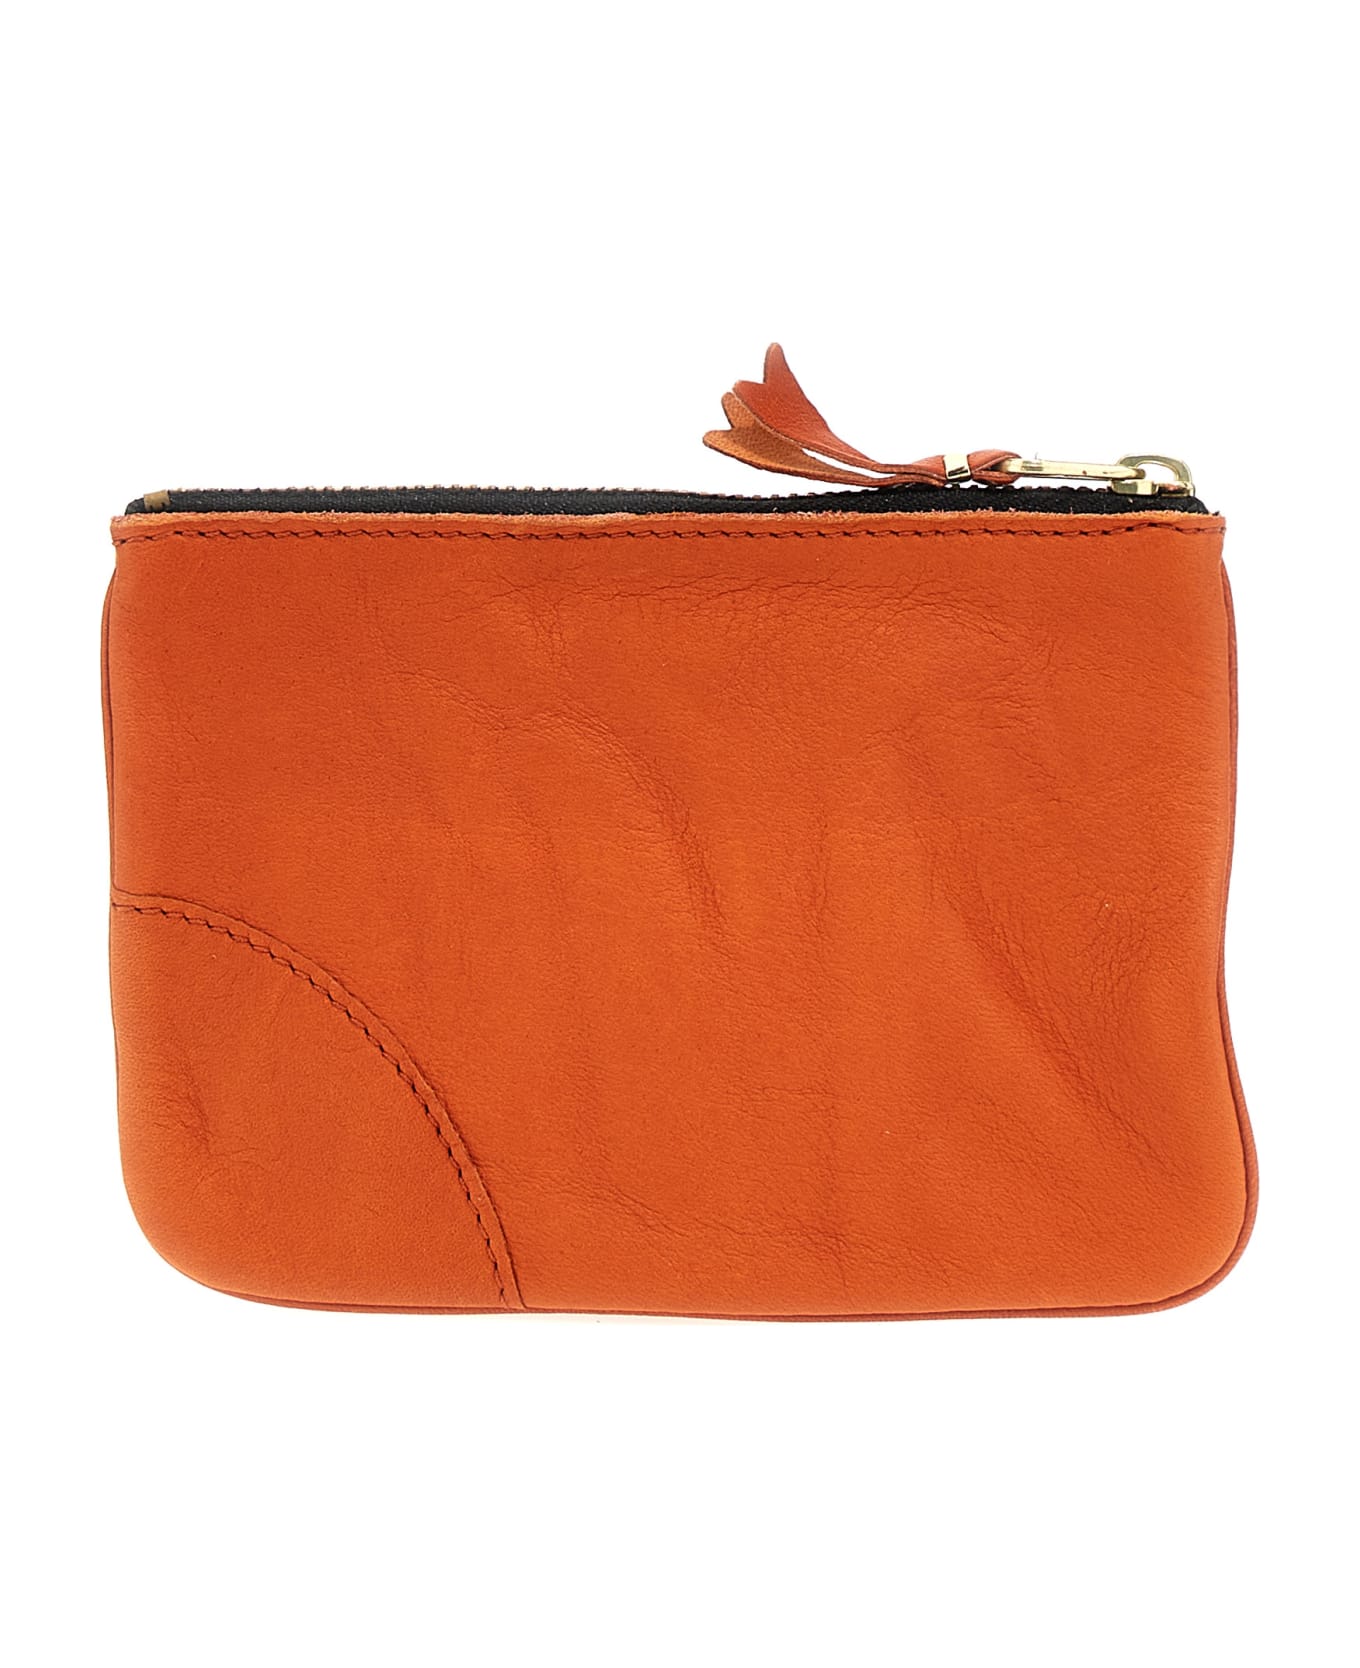 Comme des Garçons Wallet 'washed' Wallet - Orange